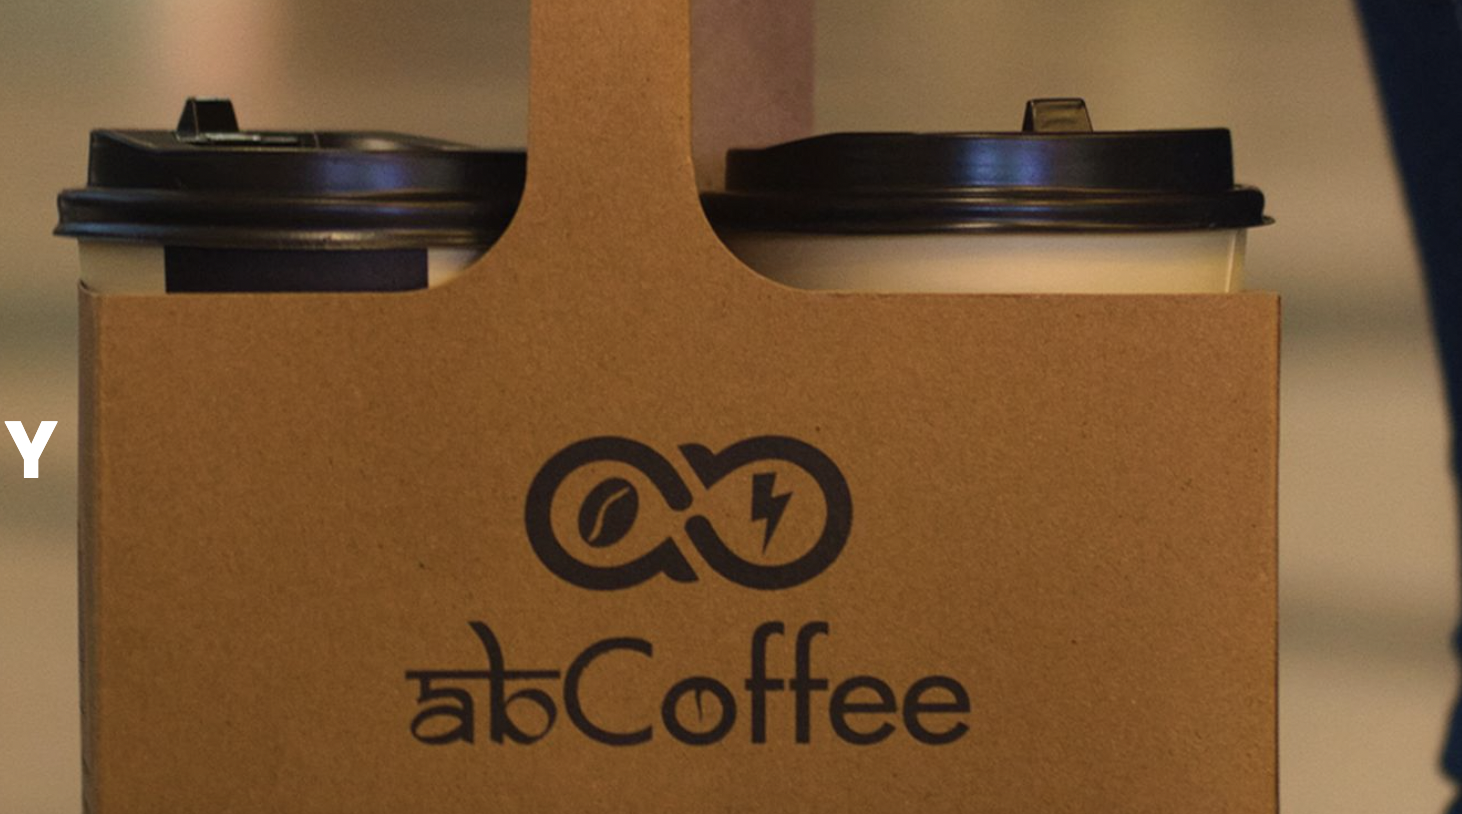 咖啡连锁品牌「abCoffee」完成340万美元A轮融资-艾格农业投融资平台